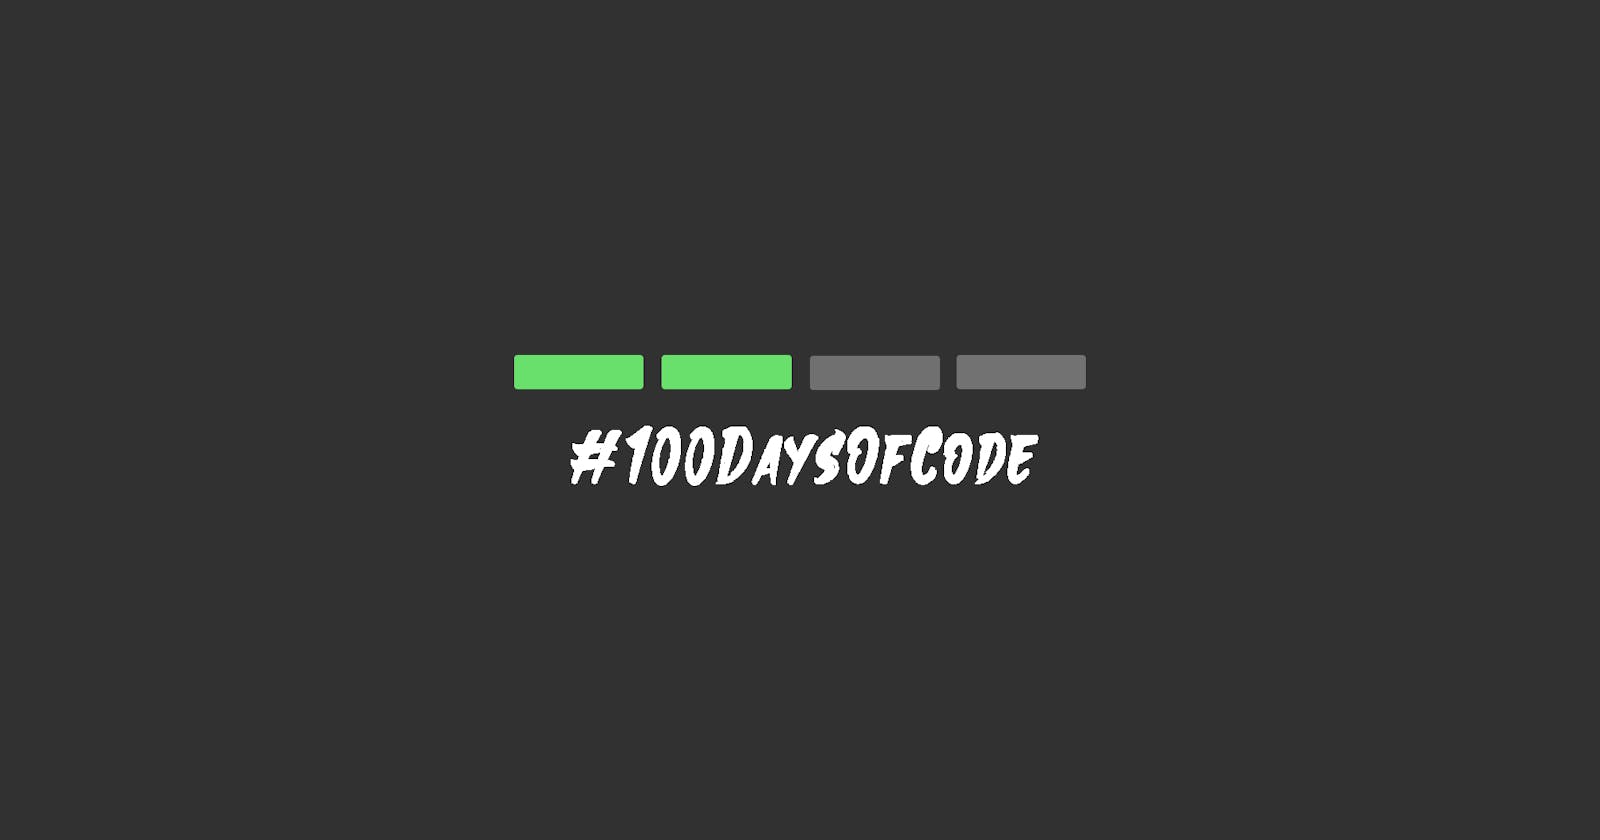 Second quarter of #100DaysOfCode